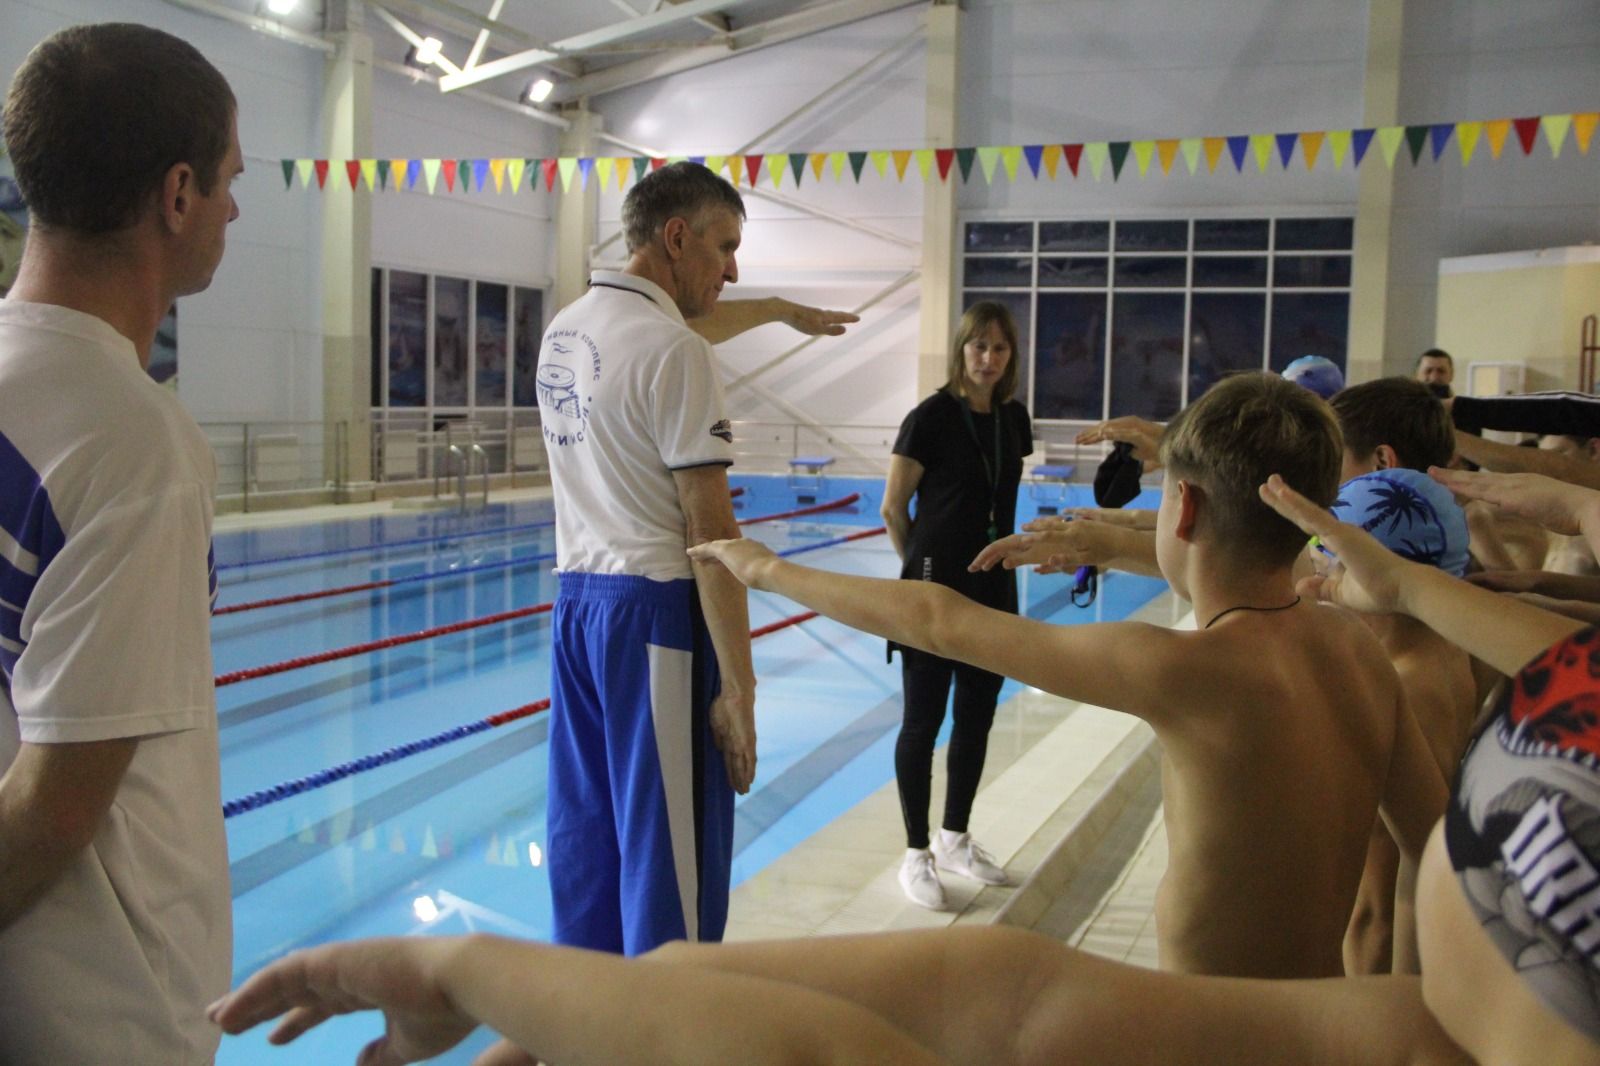 Встреча с чемпионом Европы по плаванию Алексеем Марковским в бассейне "Дулкын"